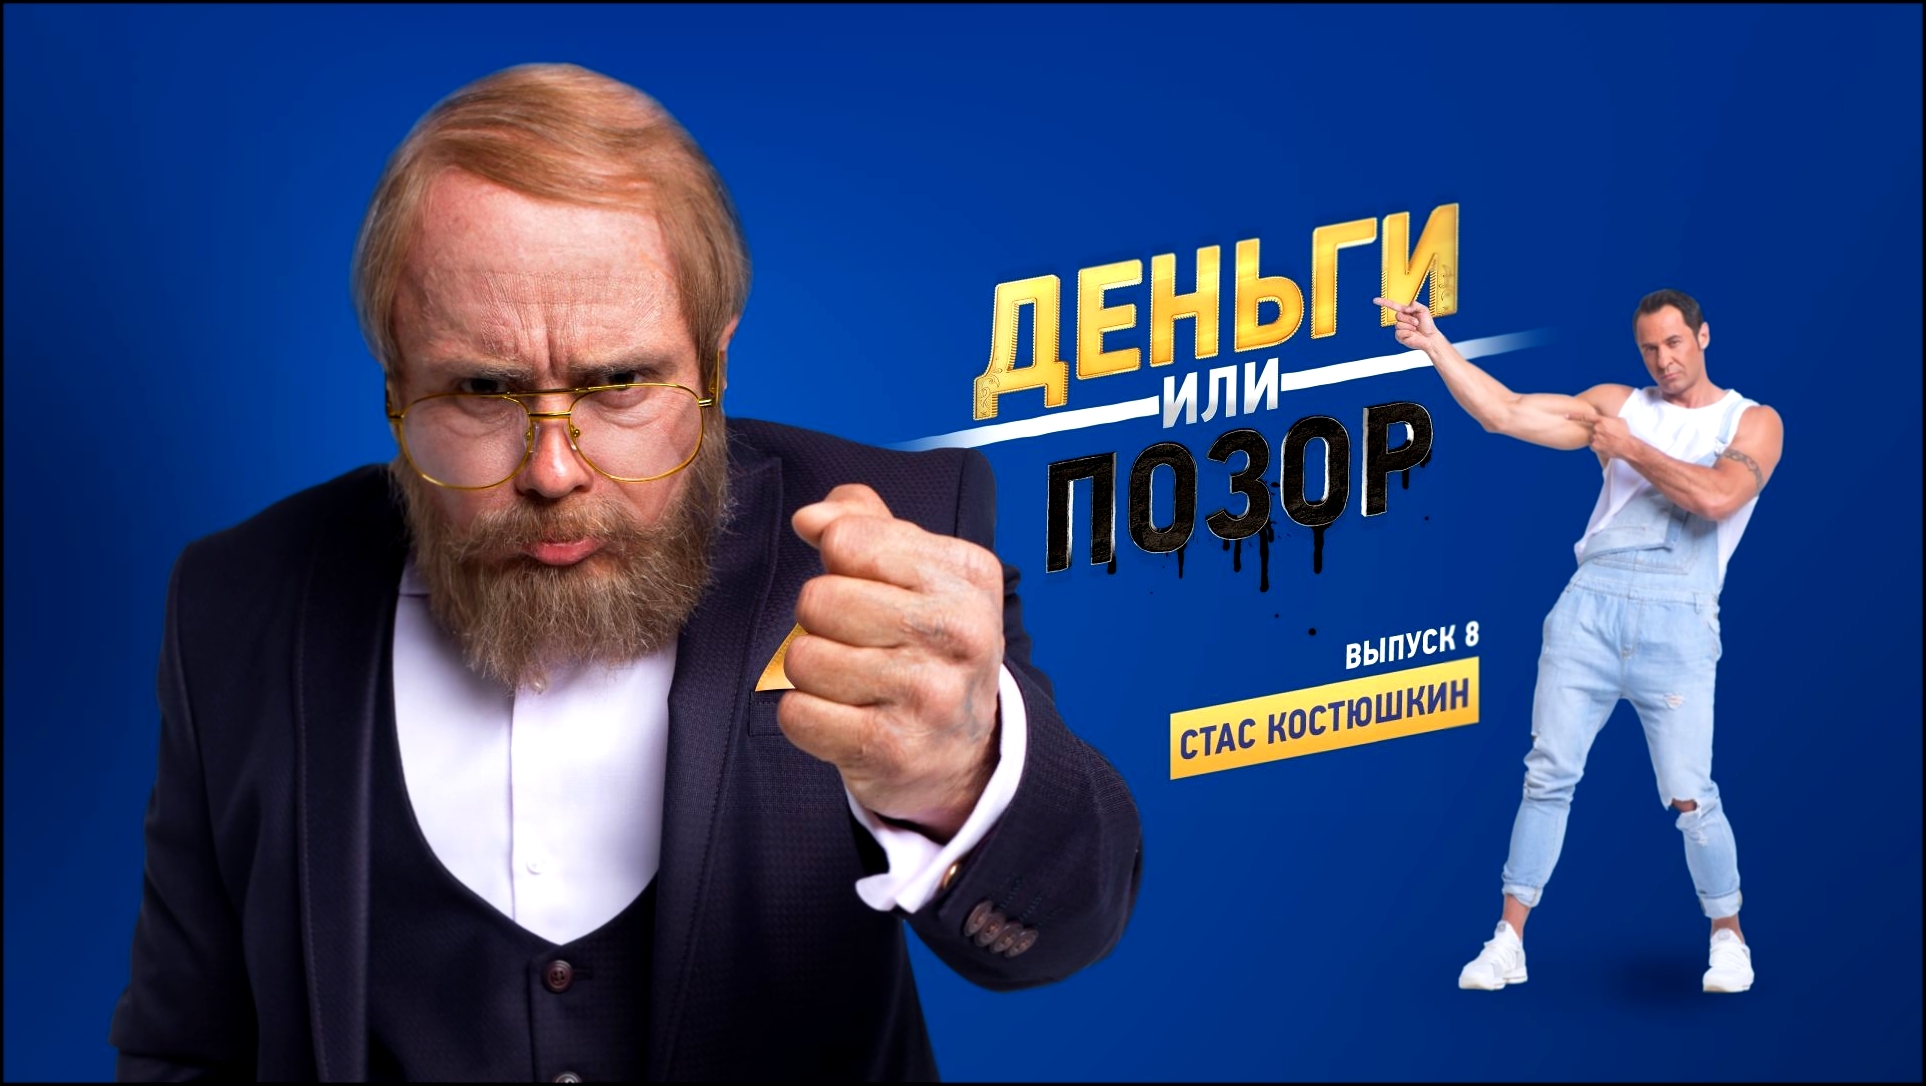 Видеоклип Деньги или позор: Стас Костюшкин (07.09.2017)